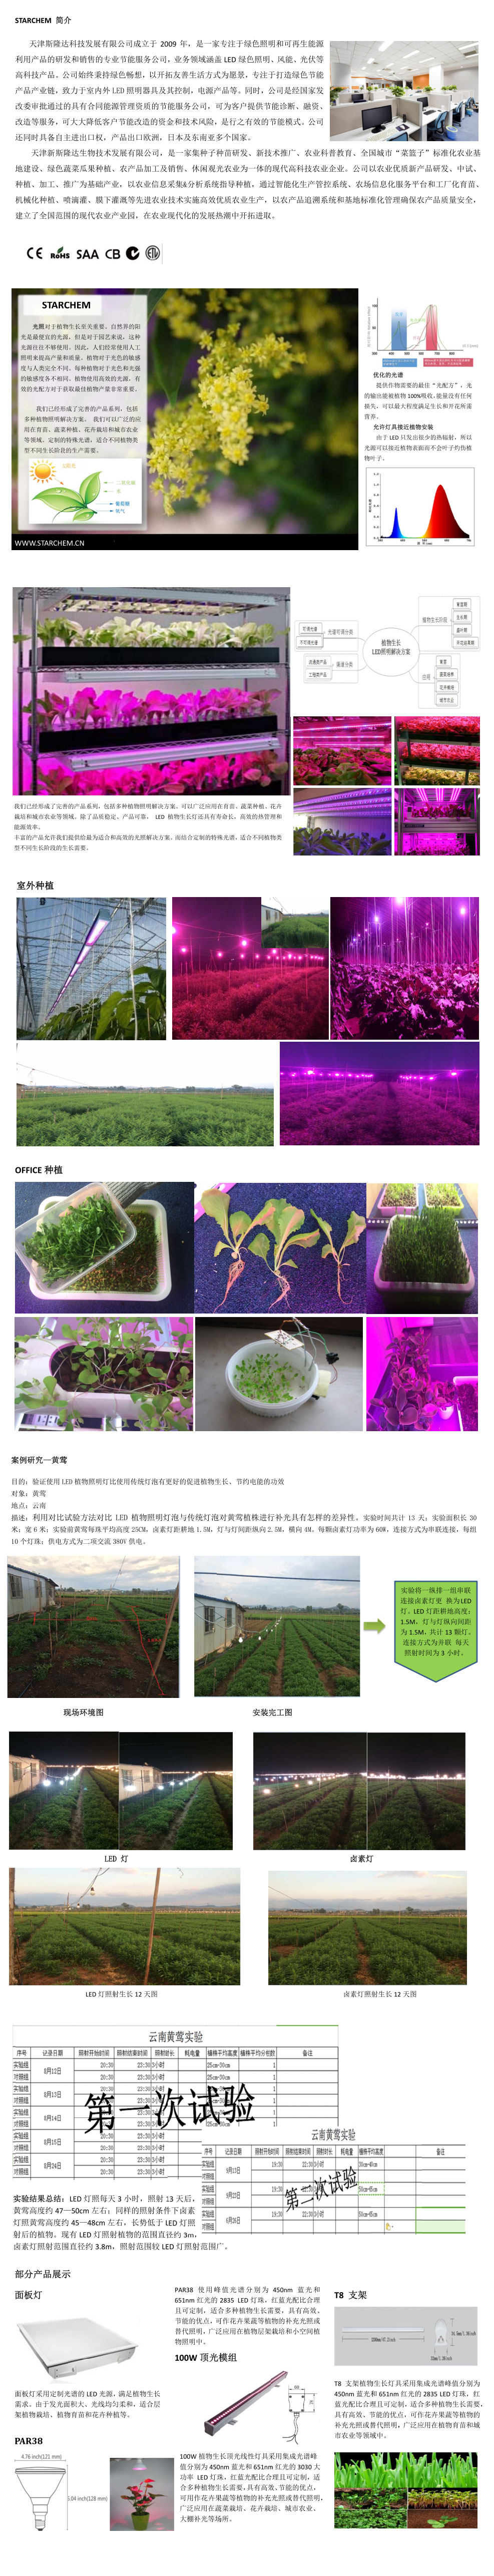 植物照明.jpg